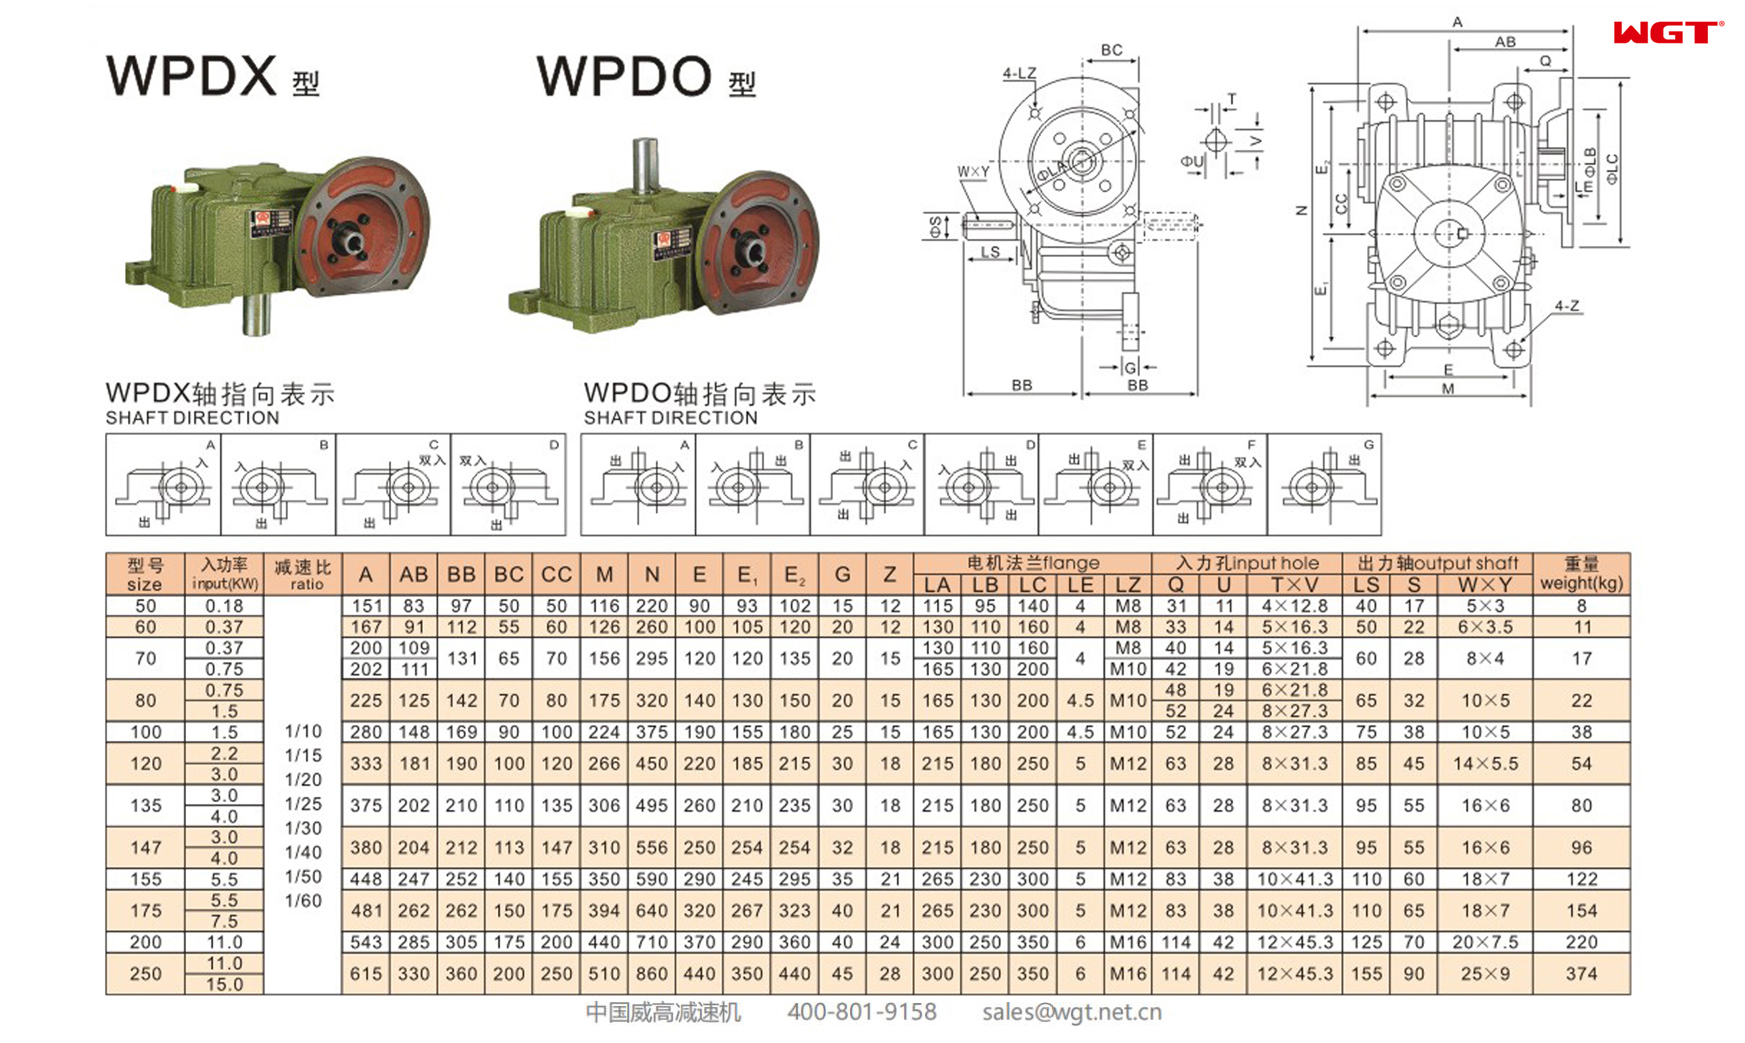 WPDO70 Червячный редуктор Односкоростной редуктор